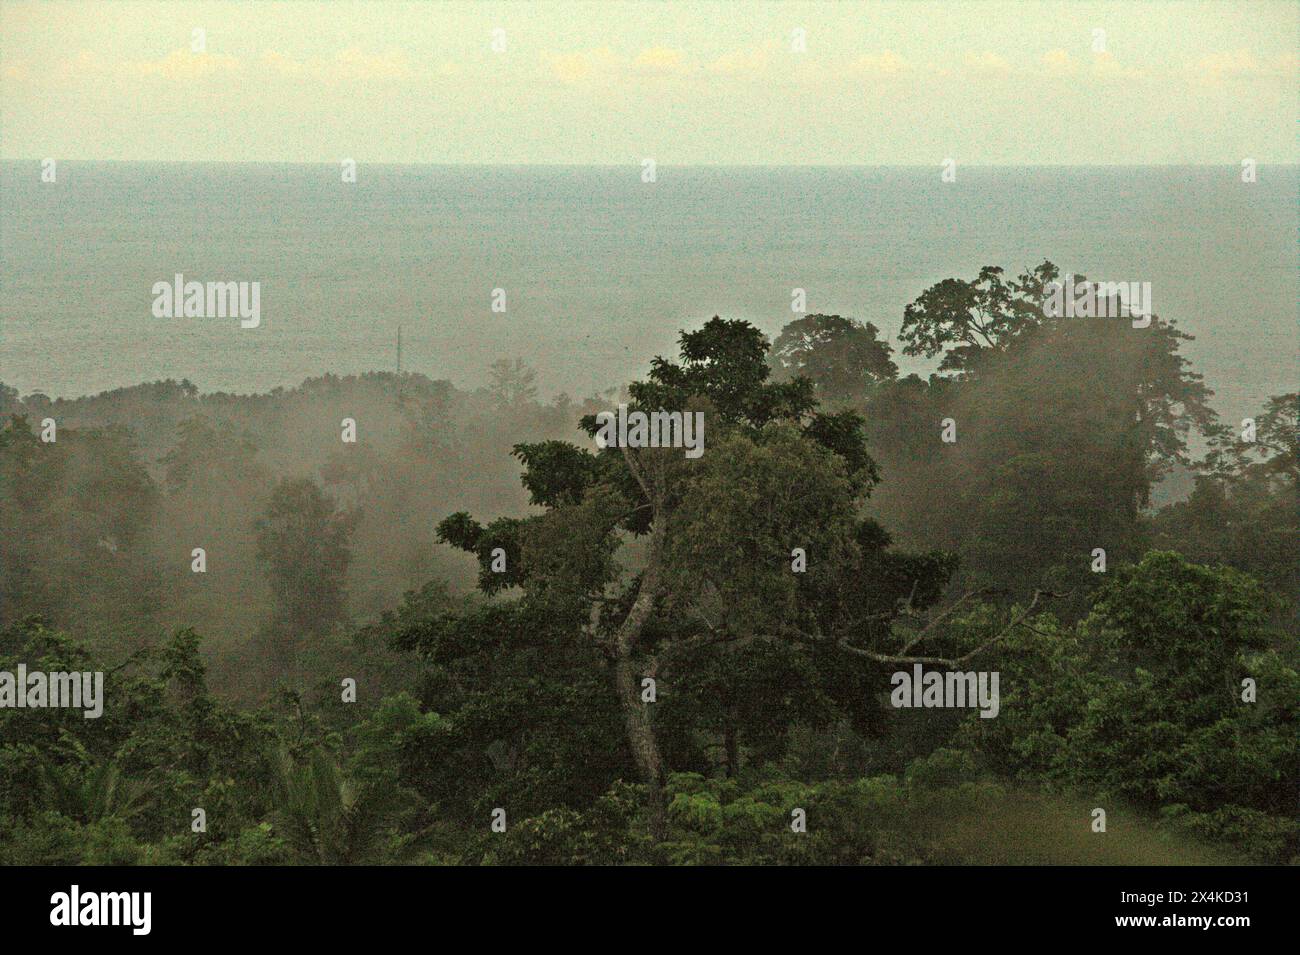 La foresta di pianura sullo sfondo del mare è fotografata da un'area vegetata vicino al Monte Tangkoko e al Monte Duasudara (Dua Saudara) a Bitung, Sulawesi settentrionale, Indonesia. Collegato alla riserva naturale di Tangkoko, questo paesaggio protegge la biodiversità, ma il cambiamento climatico è minaccioso a un ritmo allarmante. La foresta di Tangkoko soffre attualmente di un aumento della temperatura fino a 0,2 gradi Celsius all'anno, come riportato da un team di primatologi guidati da Marine Joly, con anche l'abbondanza complessiva di frutta è diminuita. L'Unione Internazionale per la conservazione della natura (IUCN) dice che le temperature in aumento... Foto Stock